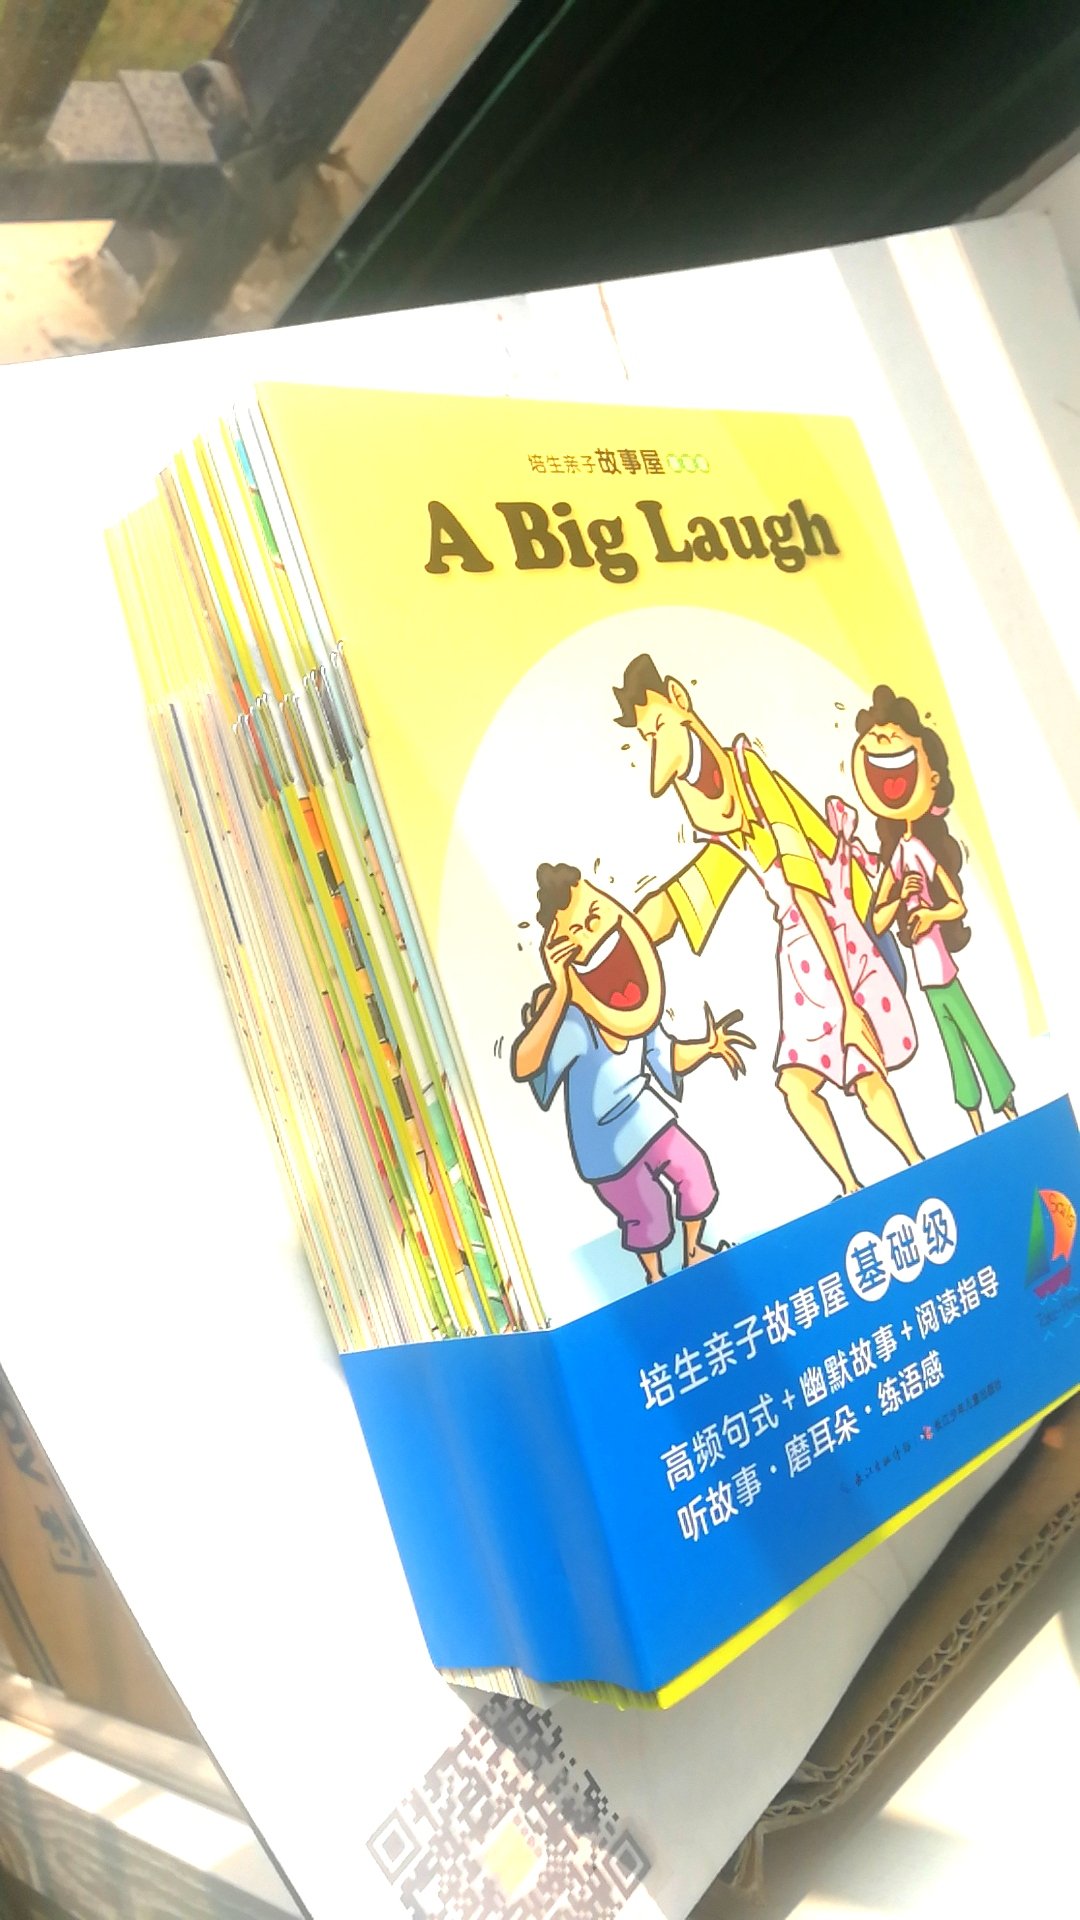 很希望孩子可以读一些英语书 简单的更好 帮助他以后学习有语感，